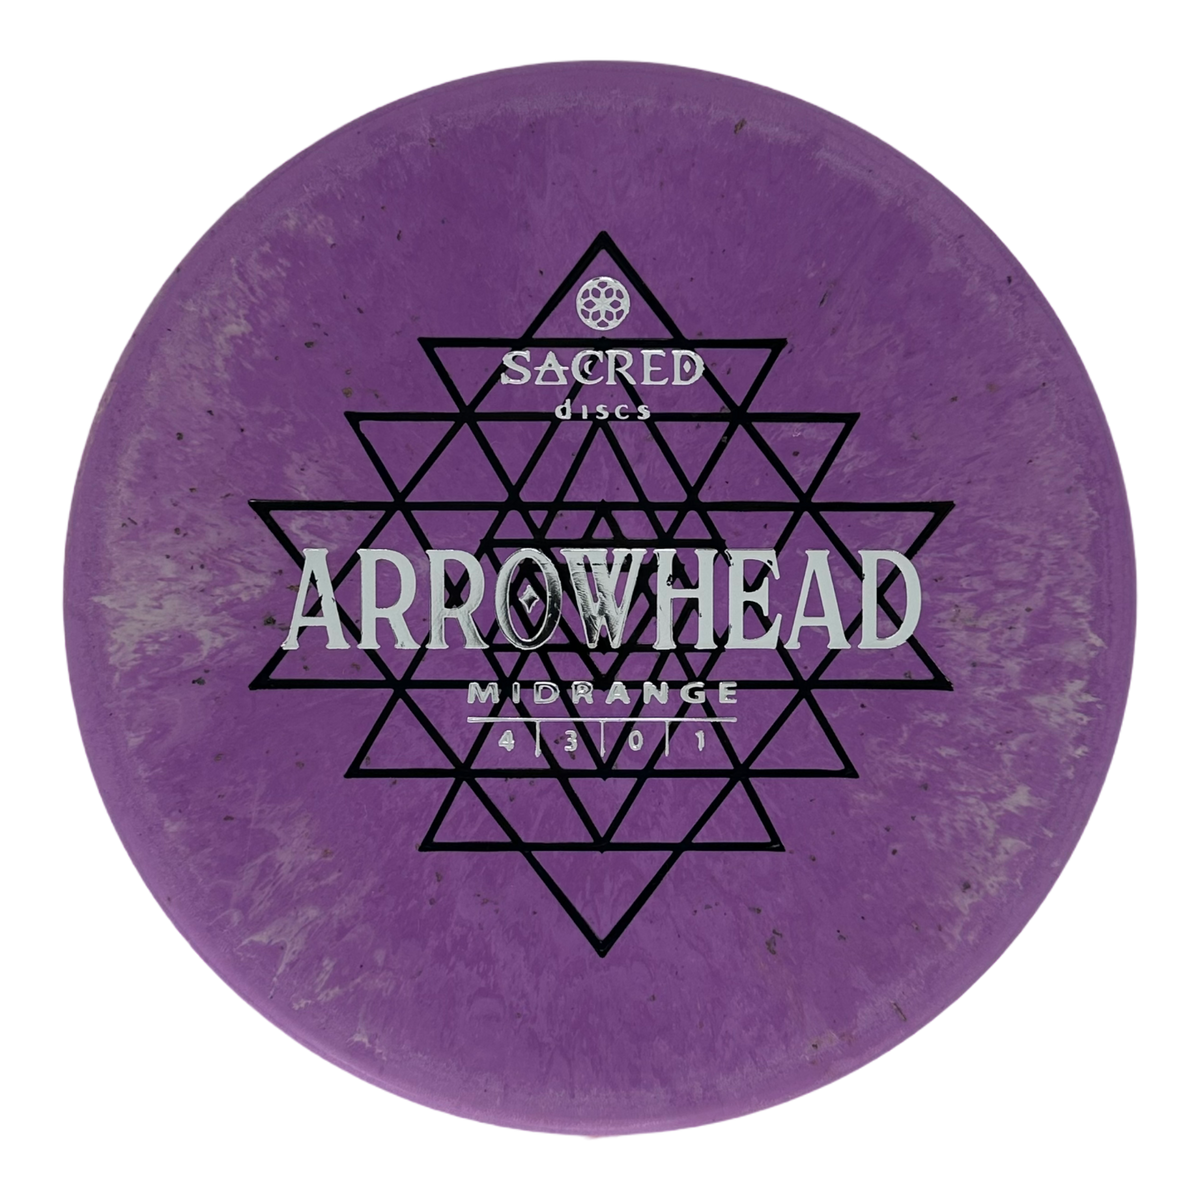 Sacred Discs Aroma Blend Arrowhead - First Run